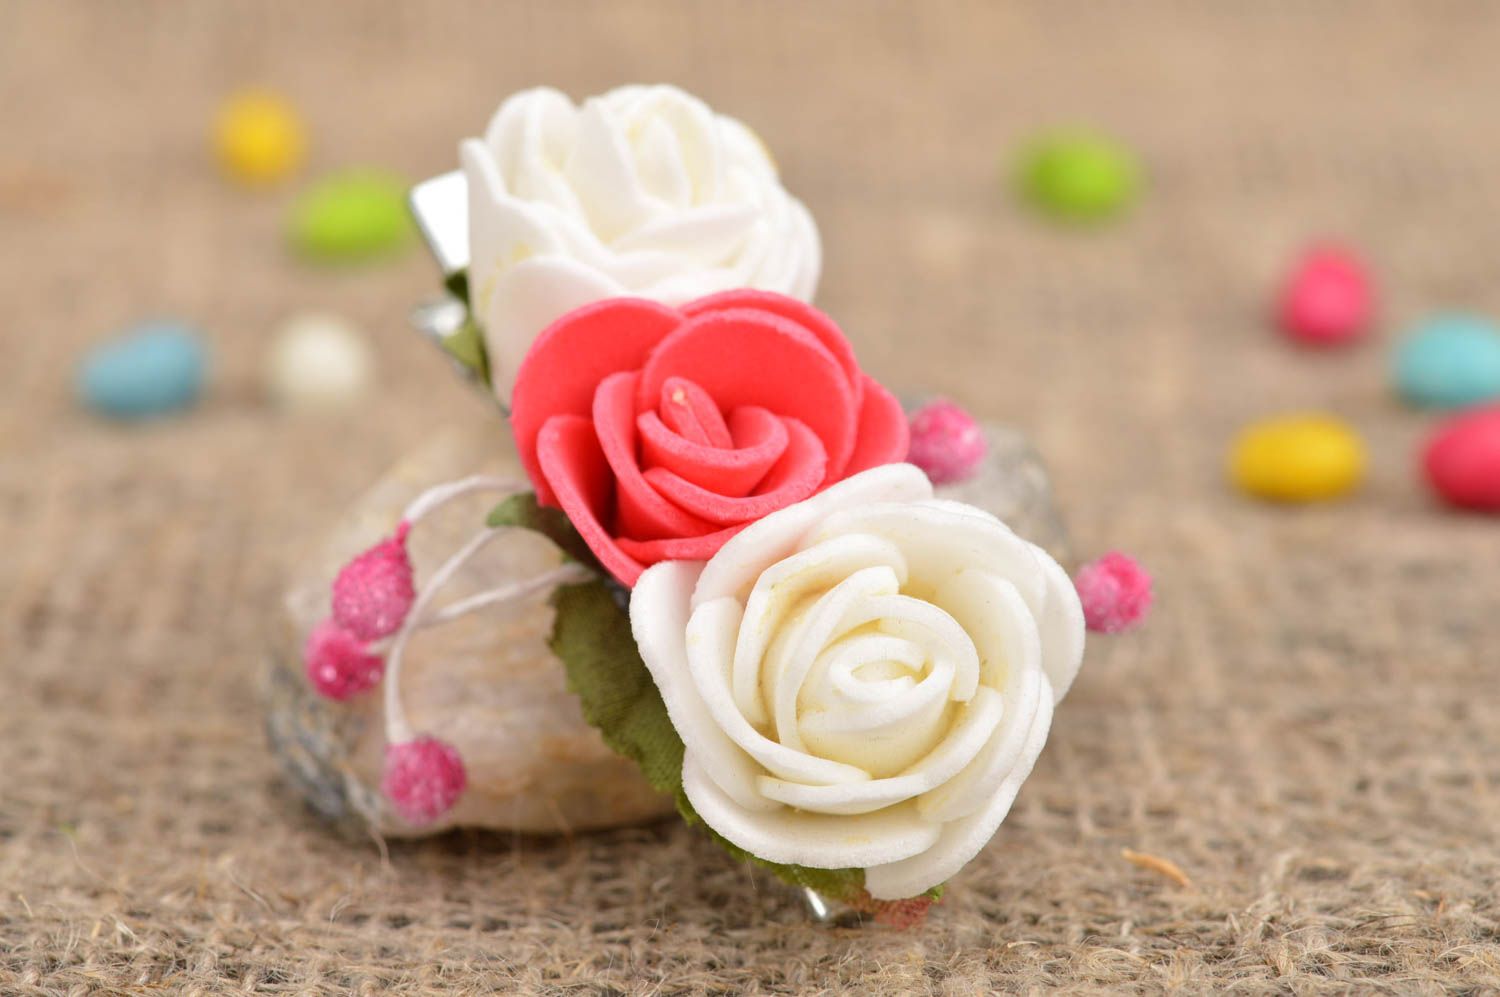 Детская заколка цветок розы белая с розовым маленькая красивая ручной работы фото 1